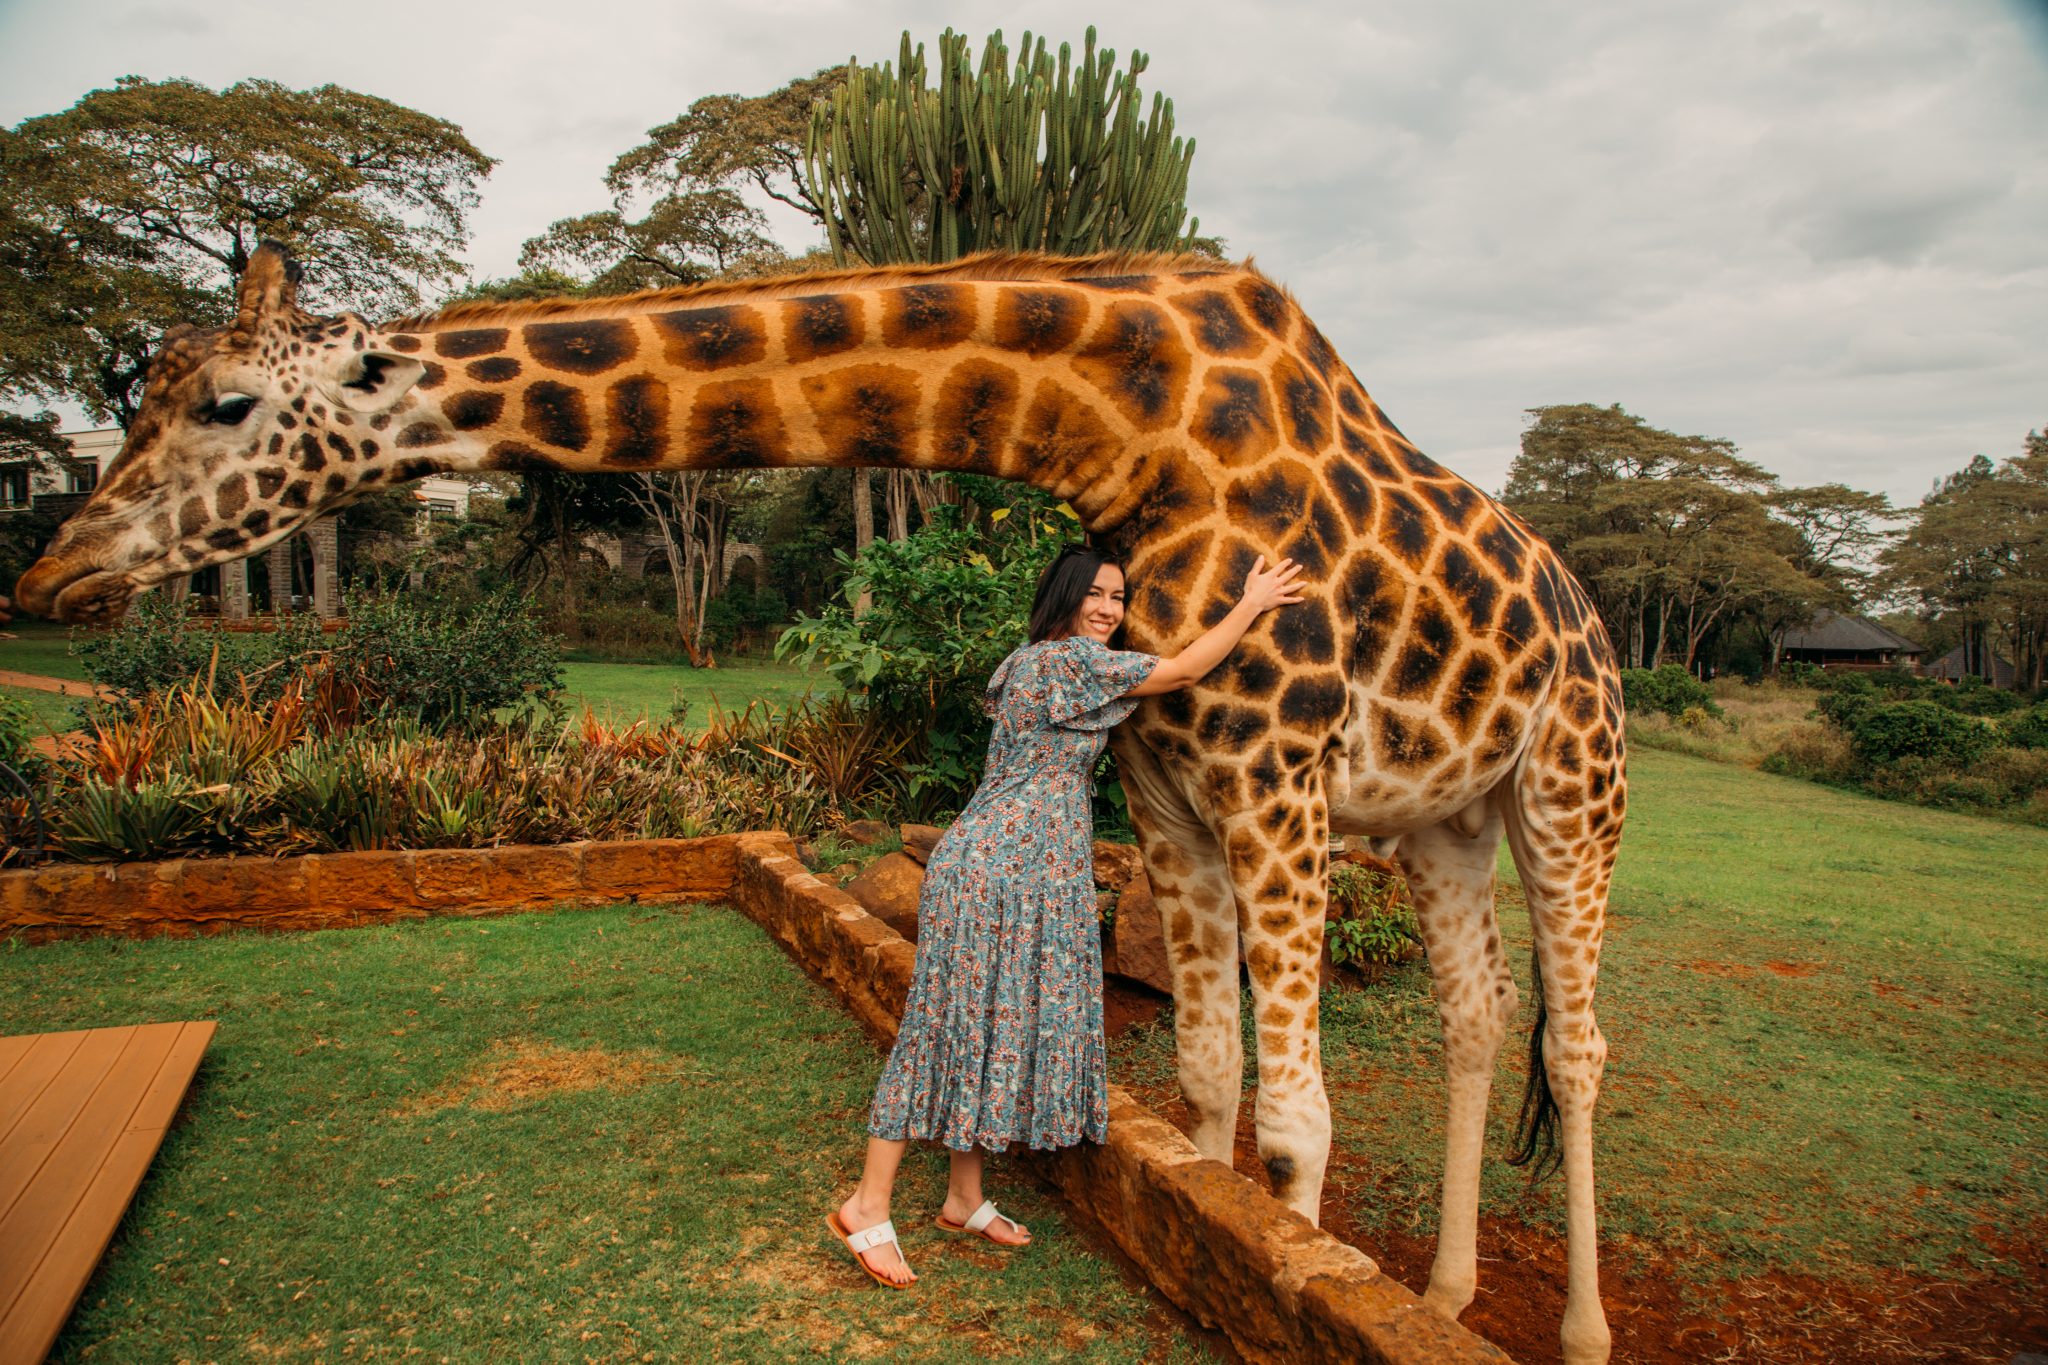 A woman hugging a giraffe at Giraffe Manor